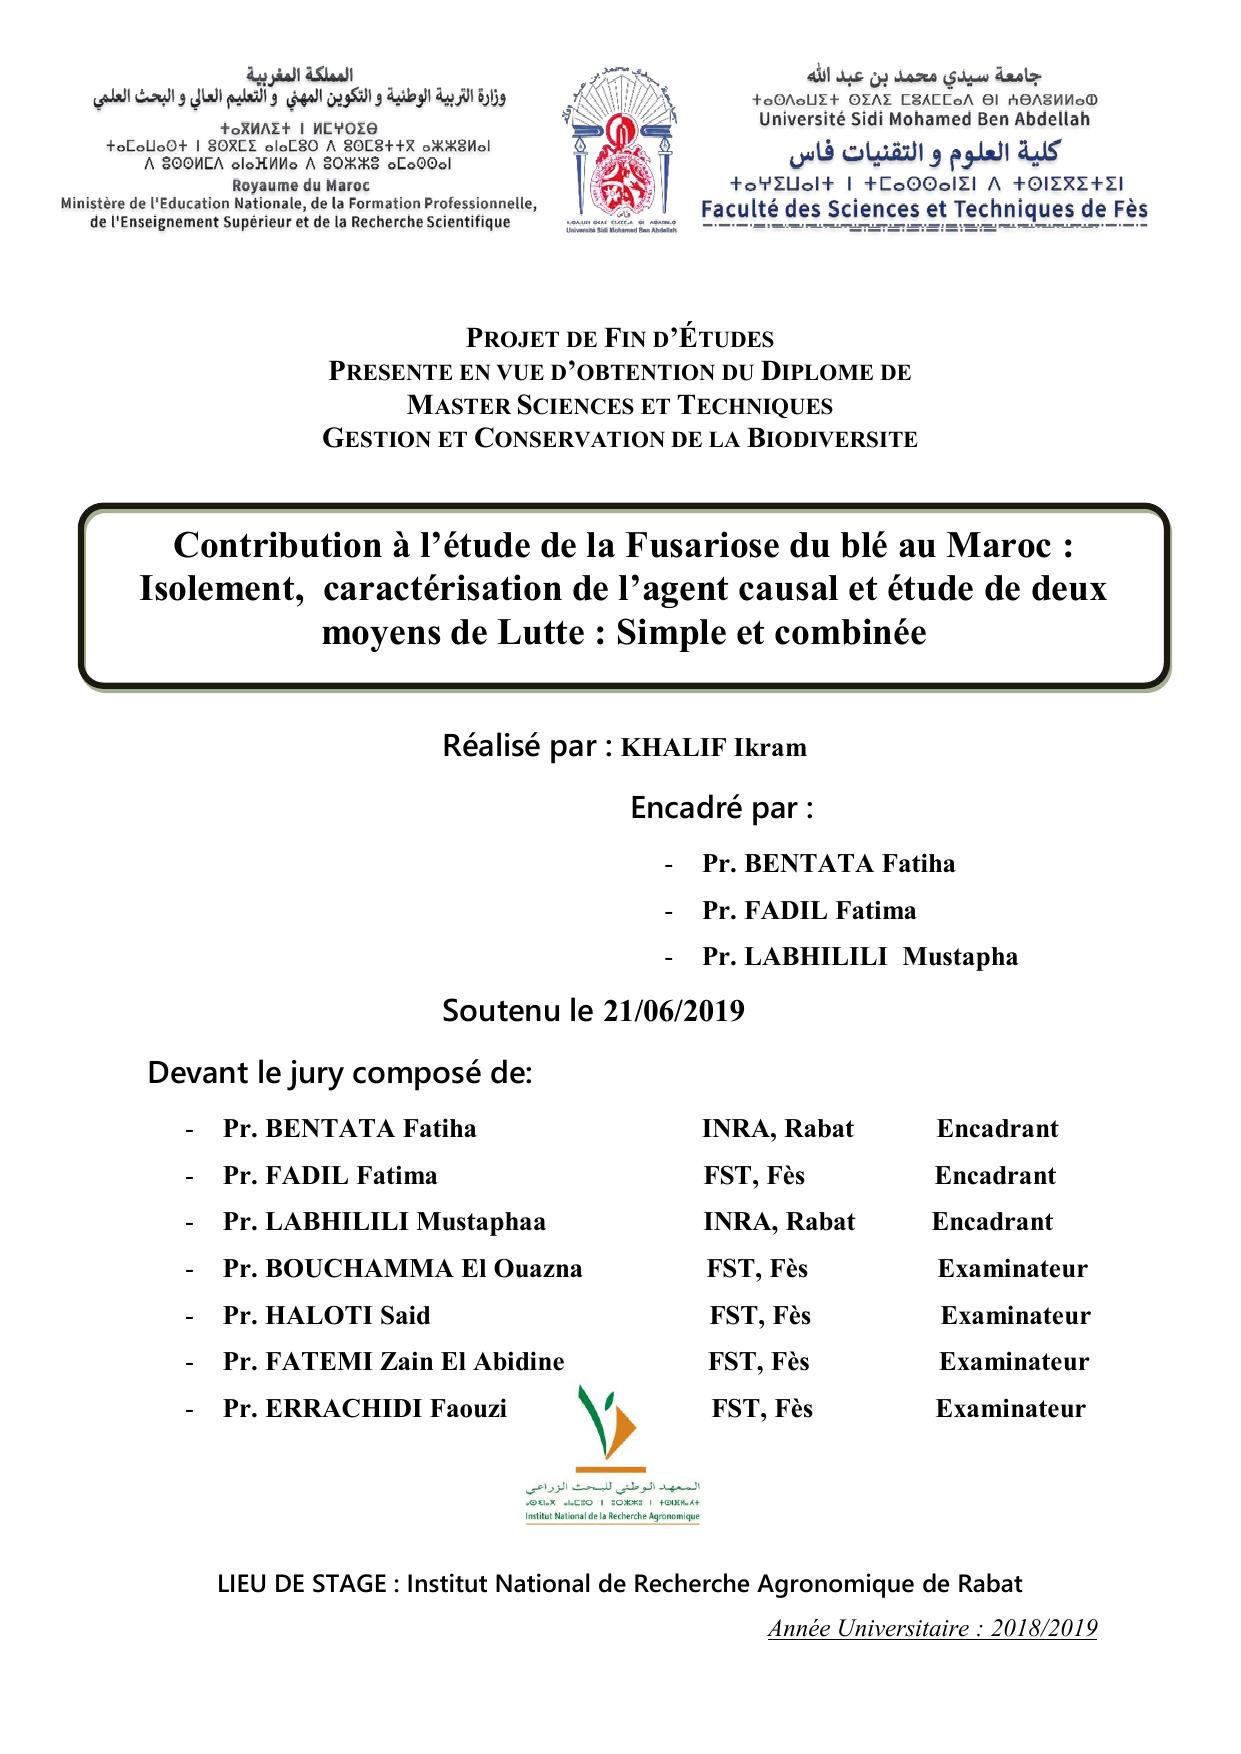 Contribution à l’étude de la Fusariose du blé au Maroc : Isolement, caractérisation de l’agent causal et étude de deux moyens de Lutte : Simple et combinée